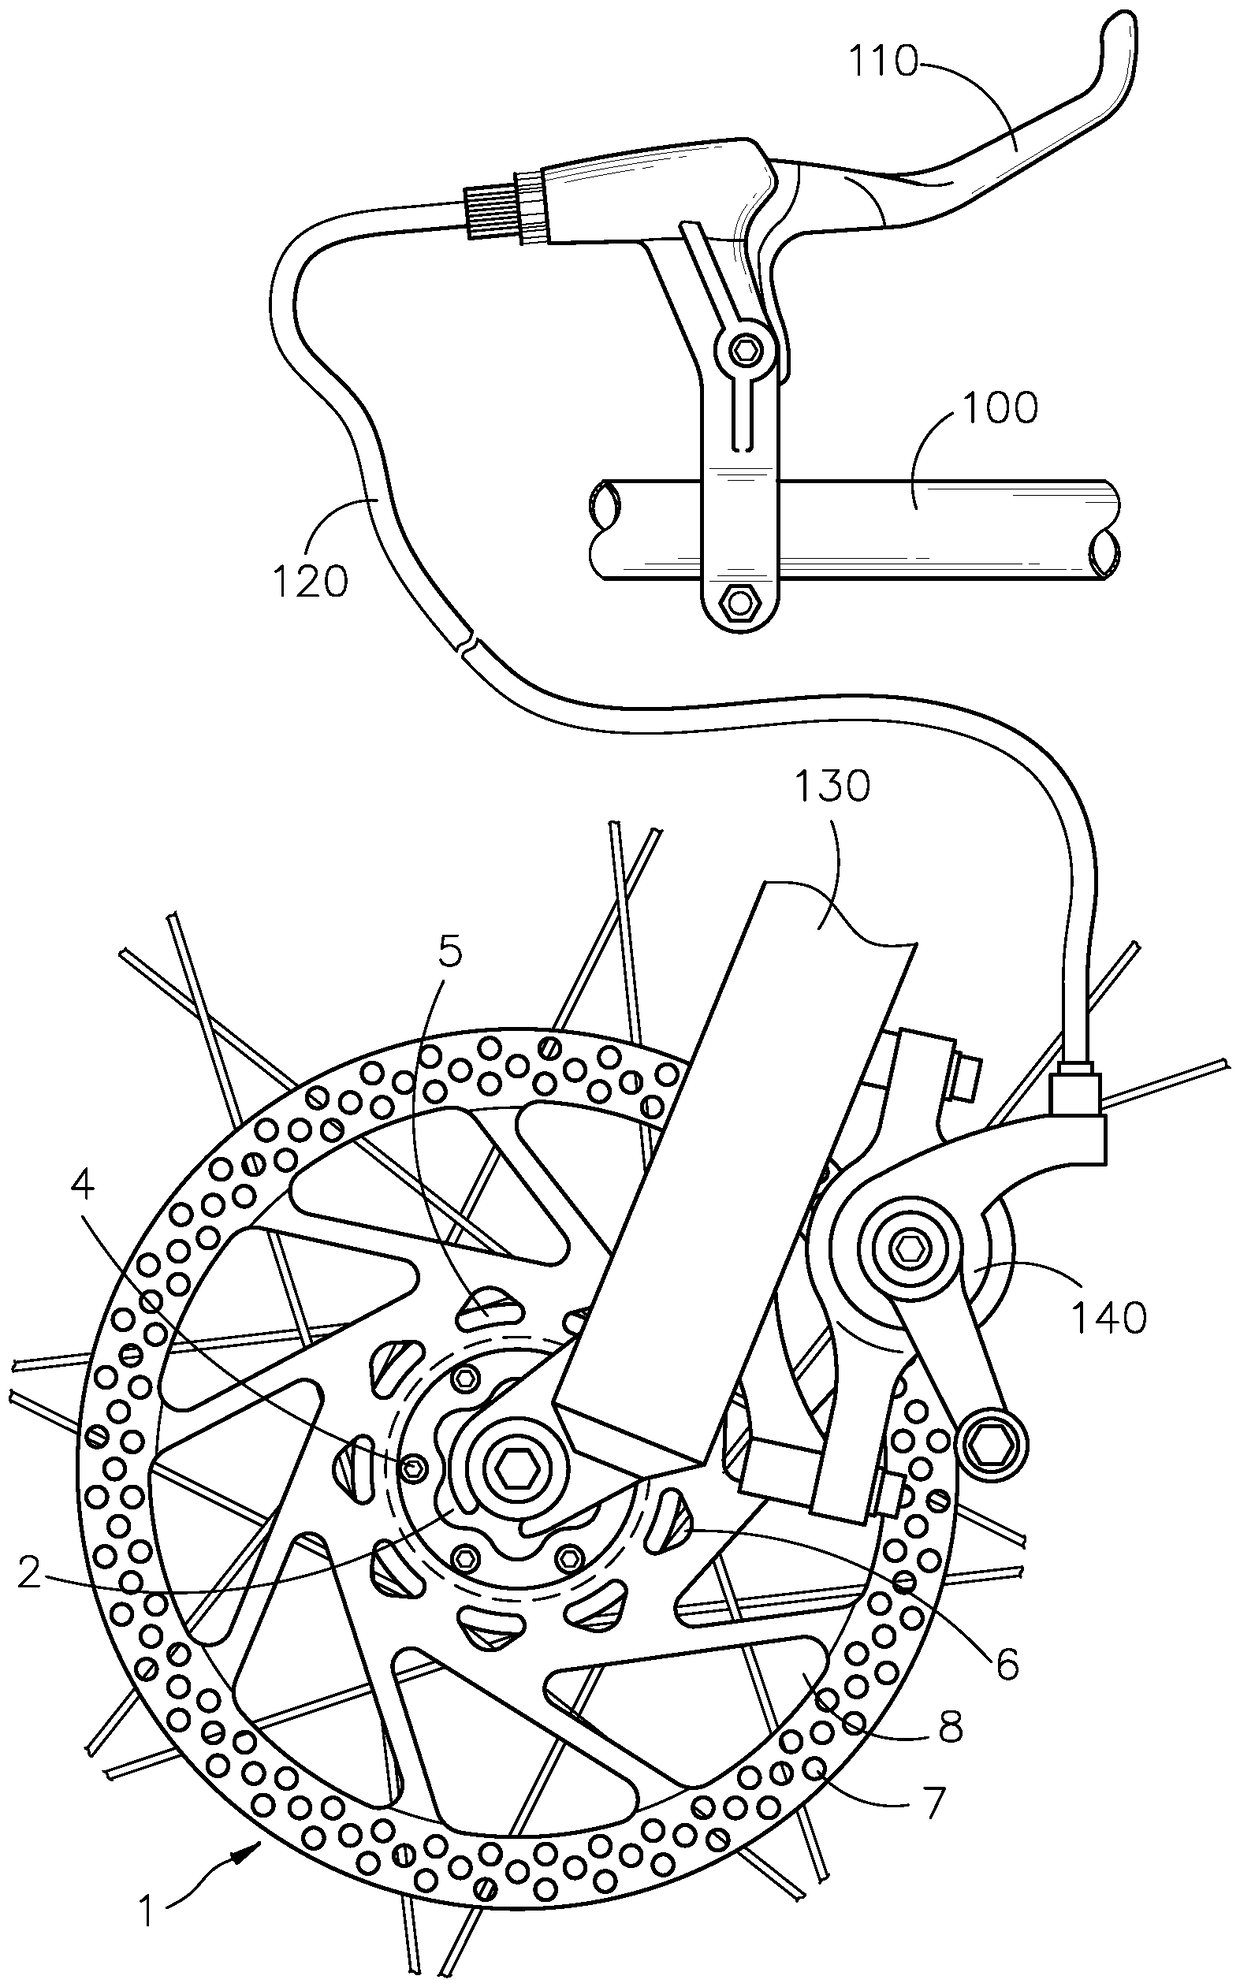 Bicycle brake disc